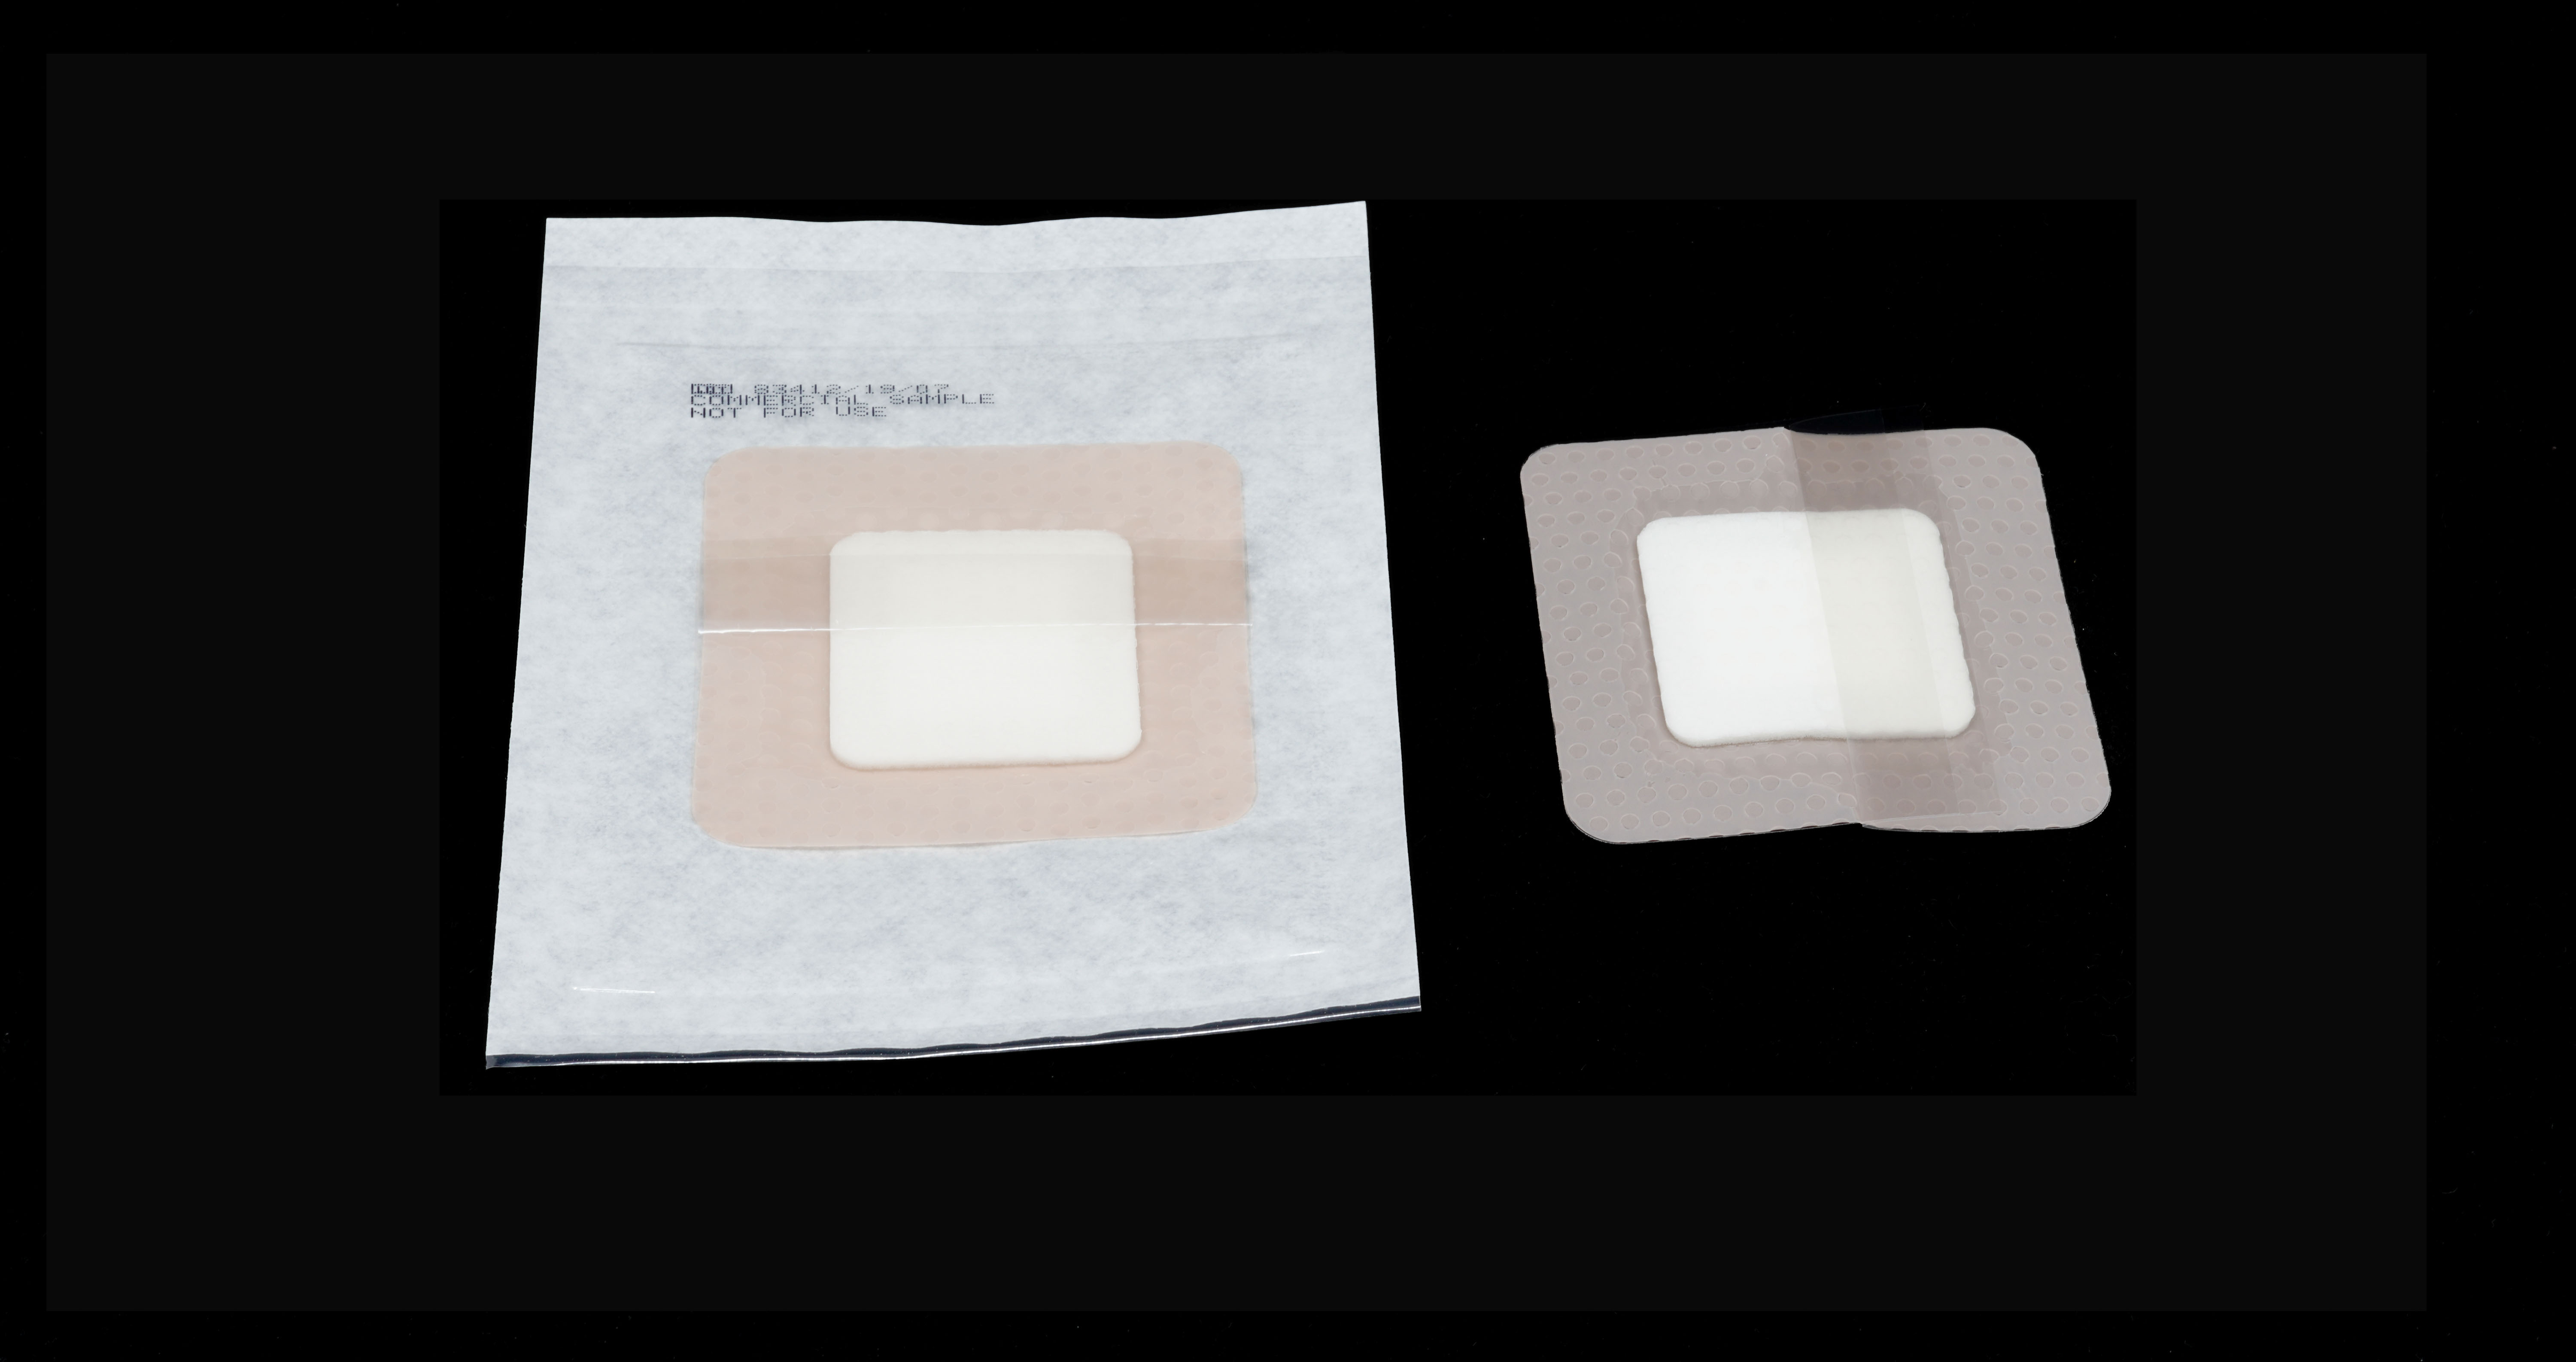 <ul> 	<li>Film polyuréthane couleur chair</li> 	<li>Compresse absorbante spécifiée par le client</li> 	<li>Bord adhésif et interface plaie en gel de silicone pour un retrait atraumatique</li> </ul>